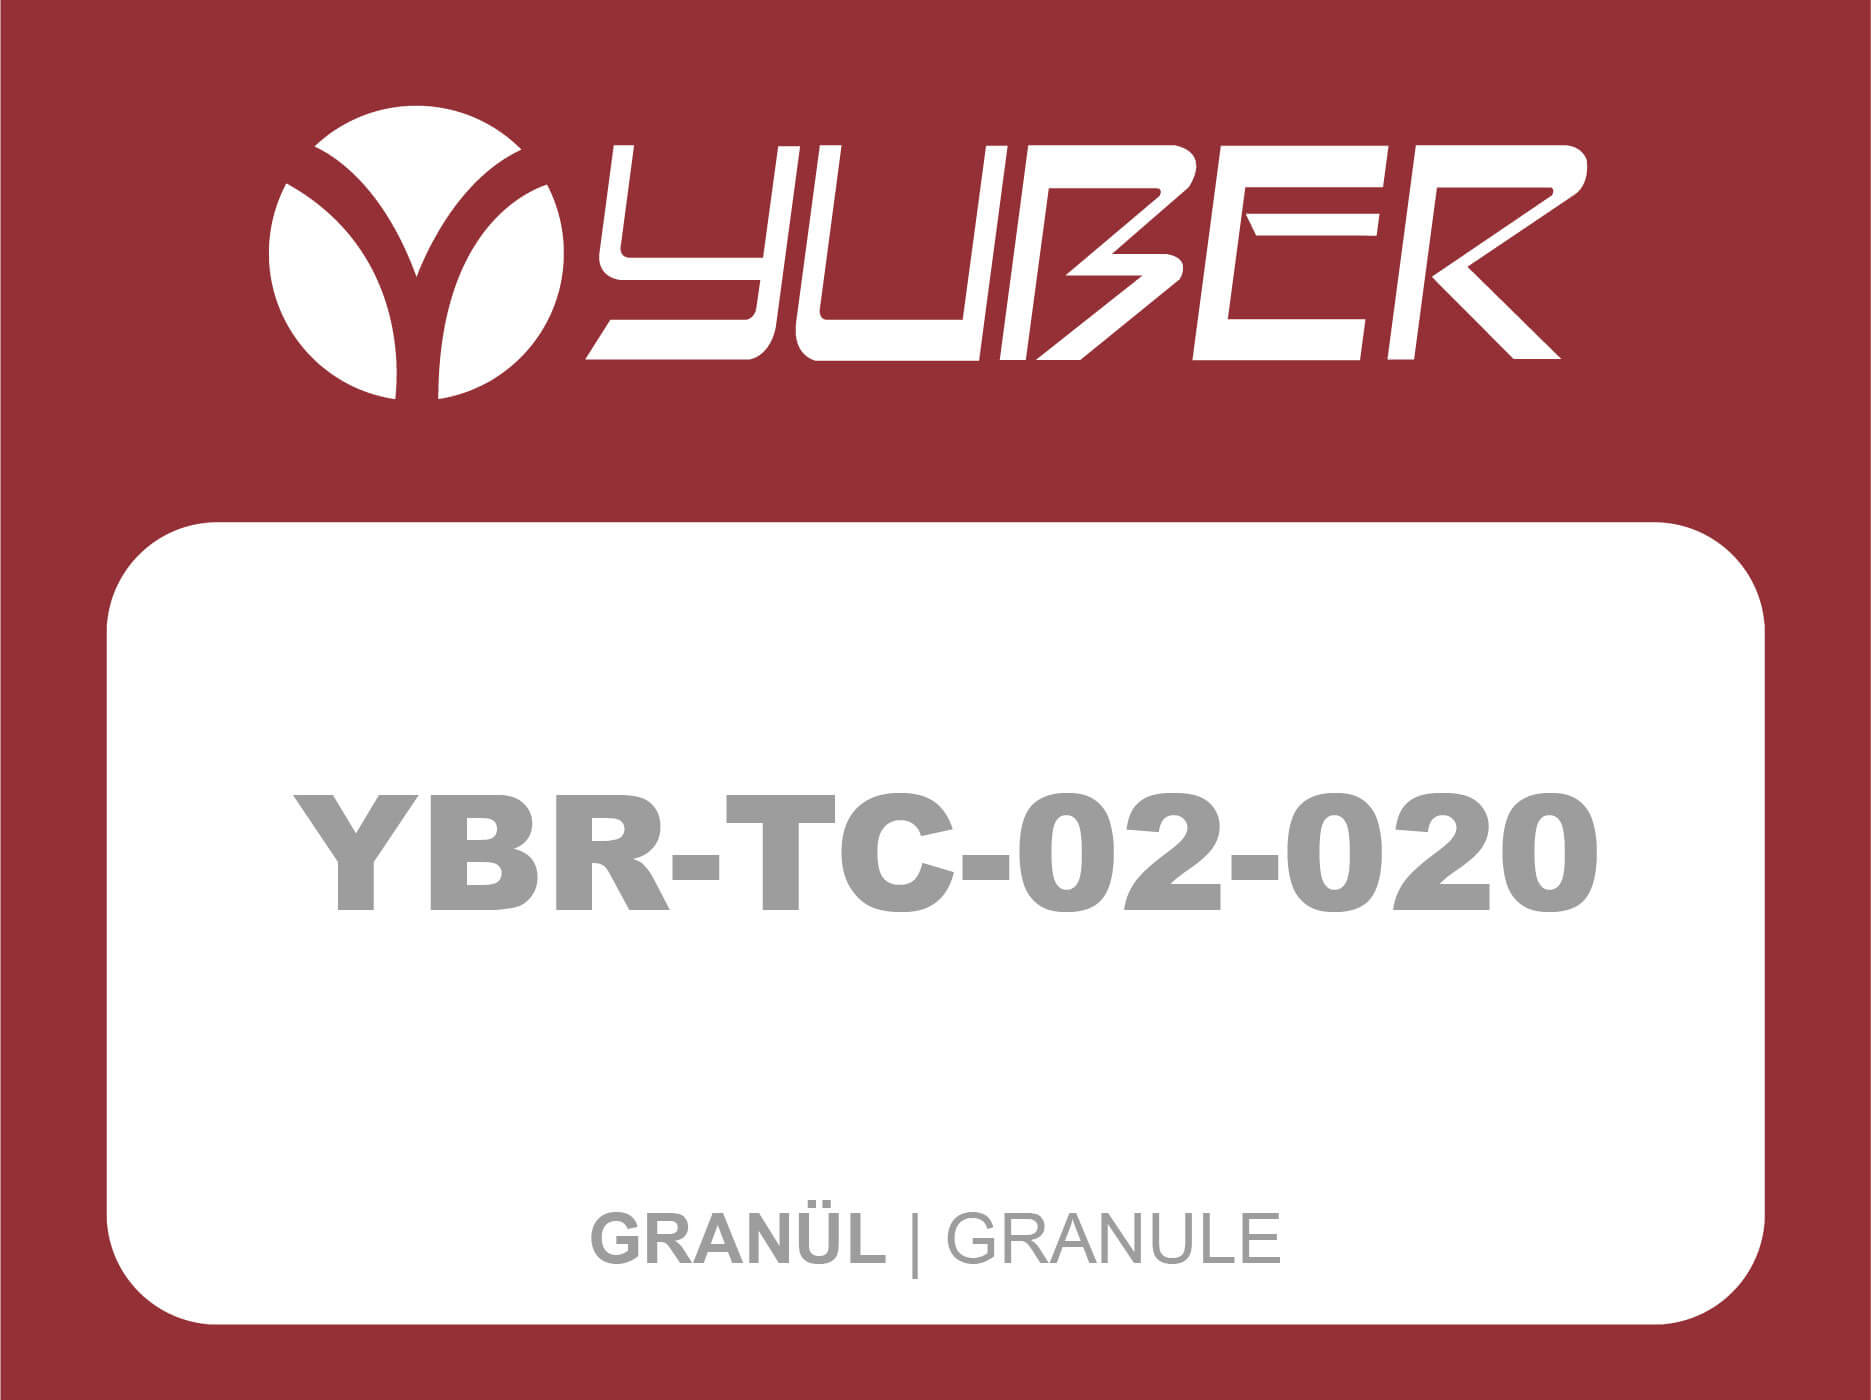 YBR TC 02 020 Granule Yuber Metallurgy